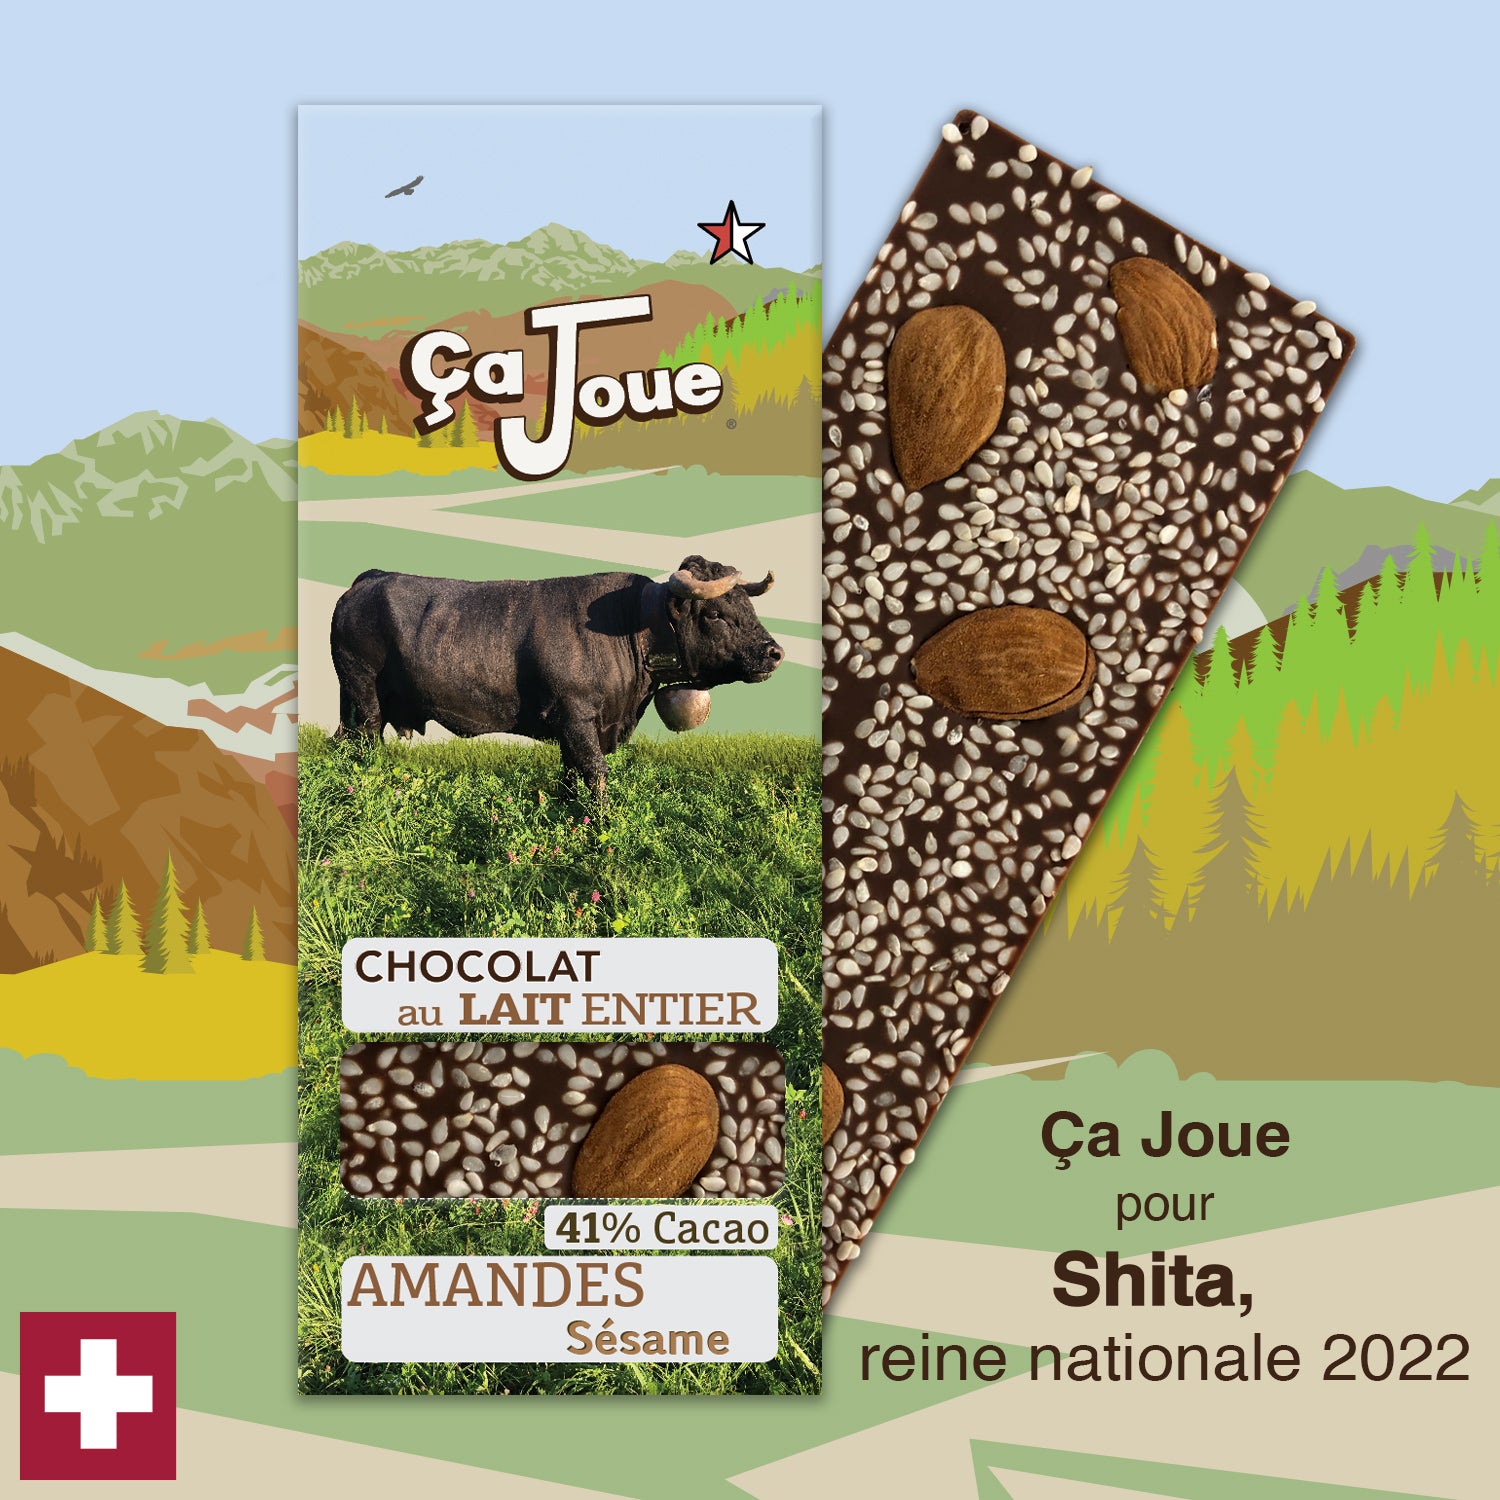 Ça Joue für die Königin Shita (Ref-BL11) Milchschokolade aus Val de Bagnes